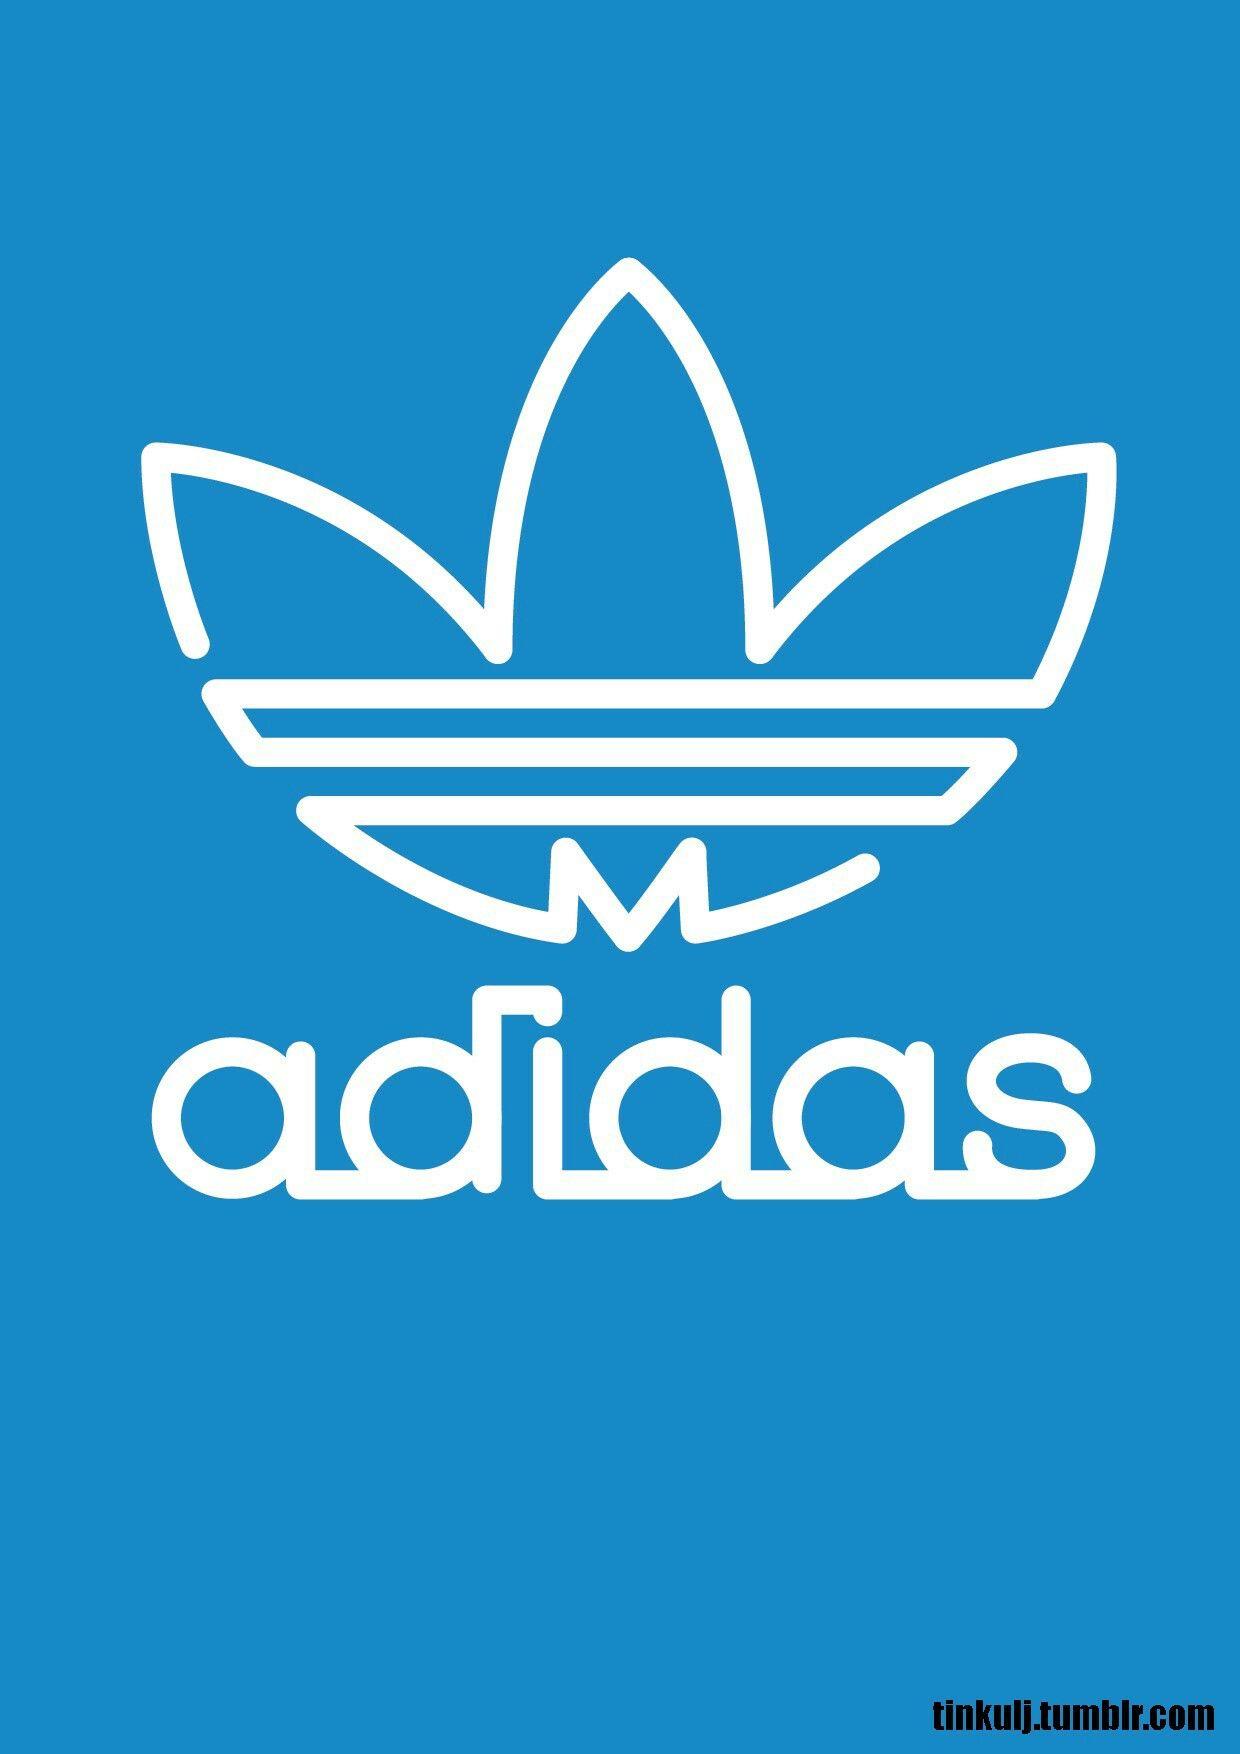 Adidas. Adidas, Logos and Wallpaper